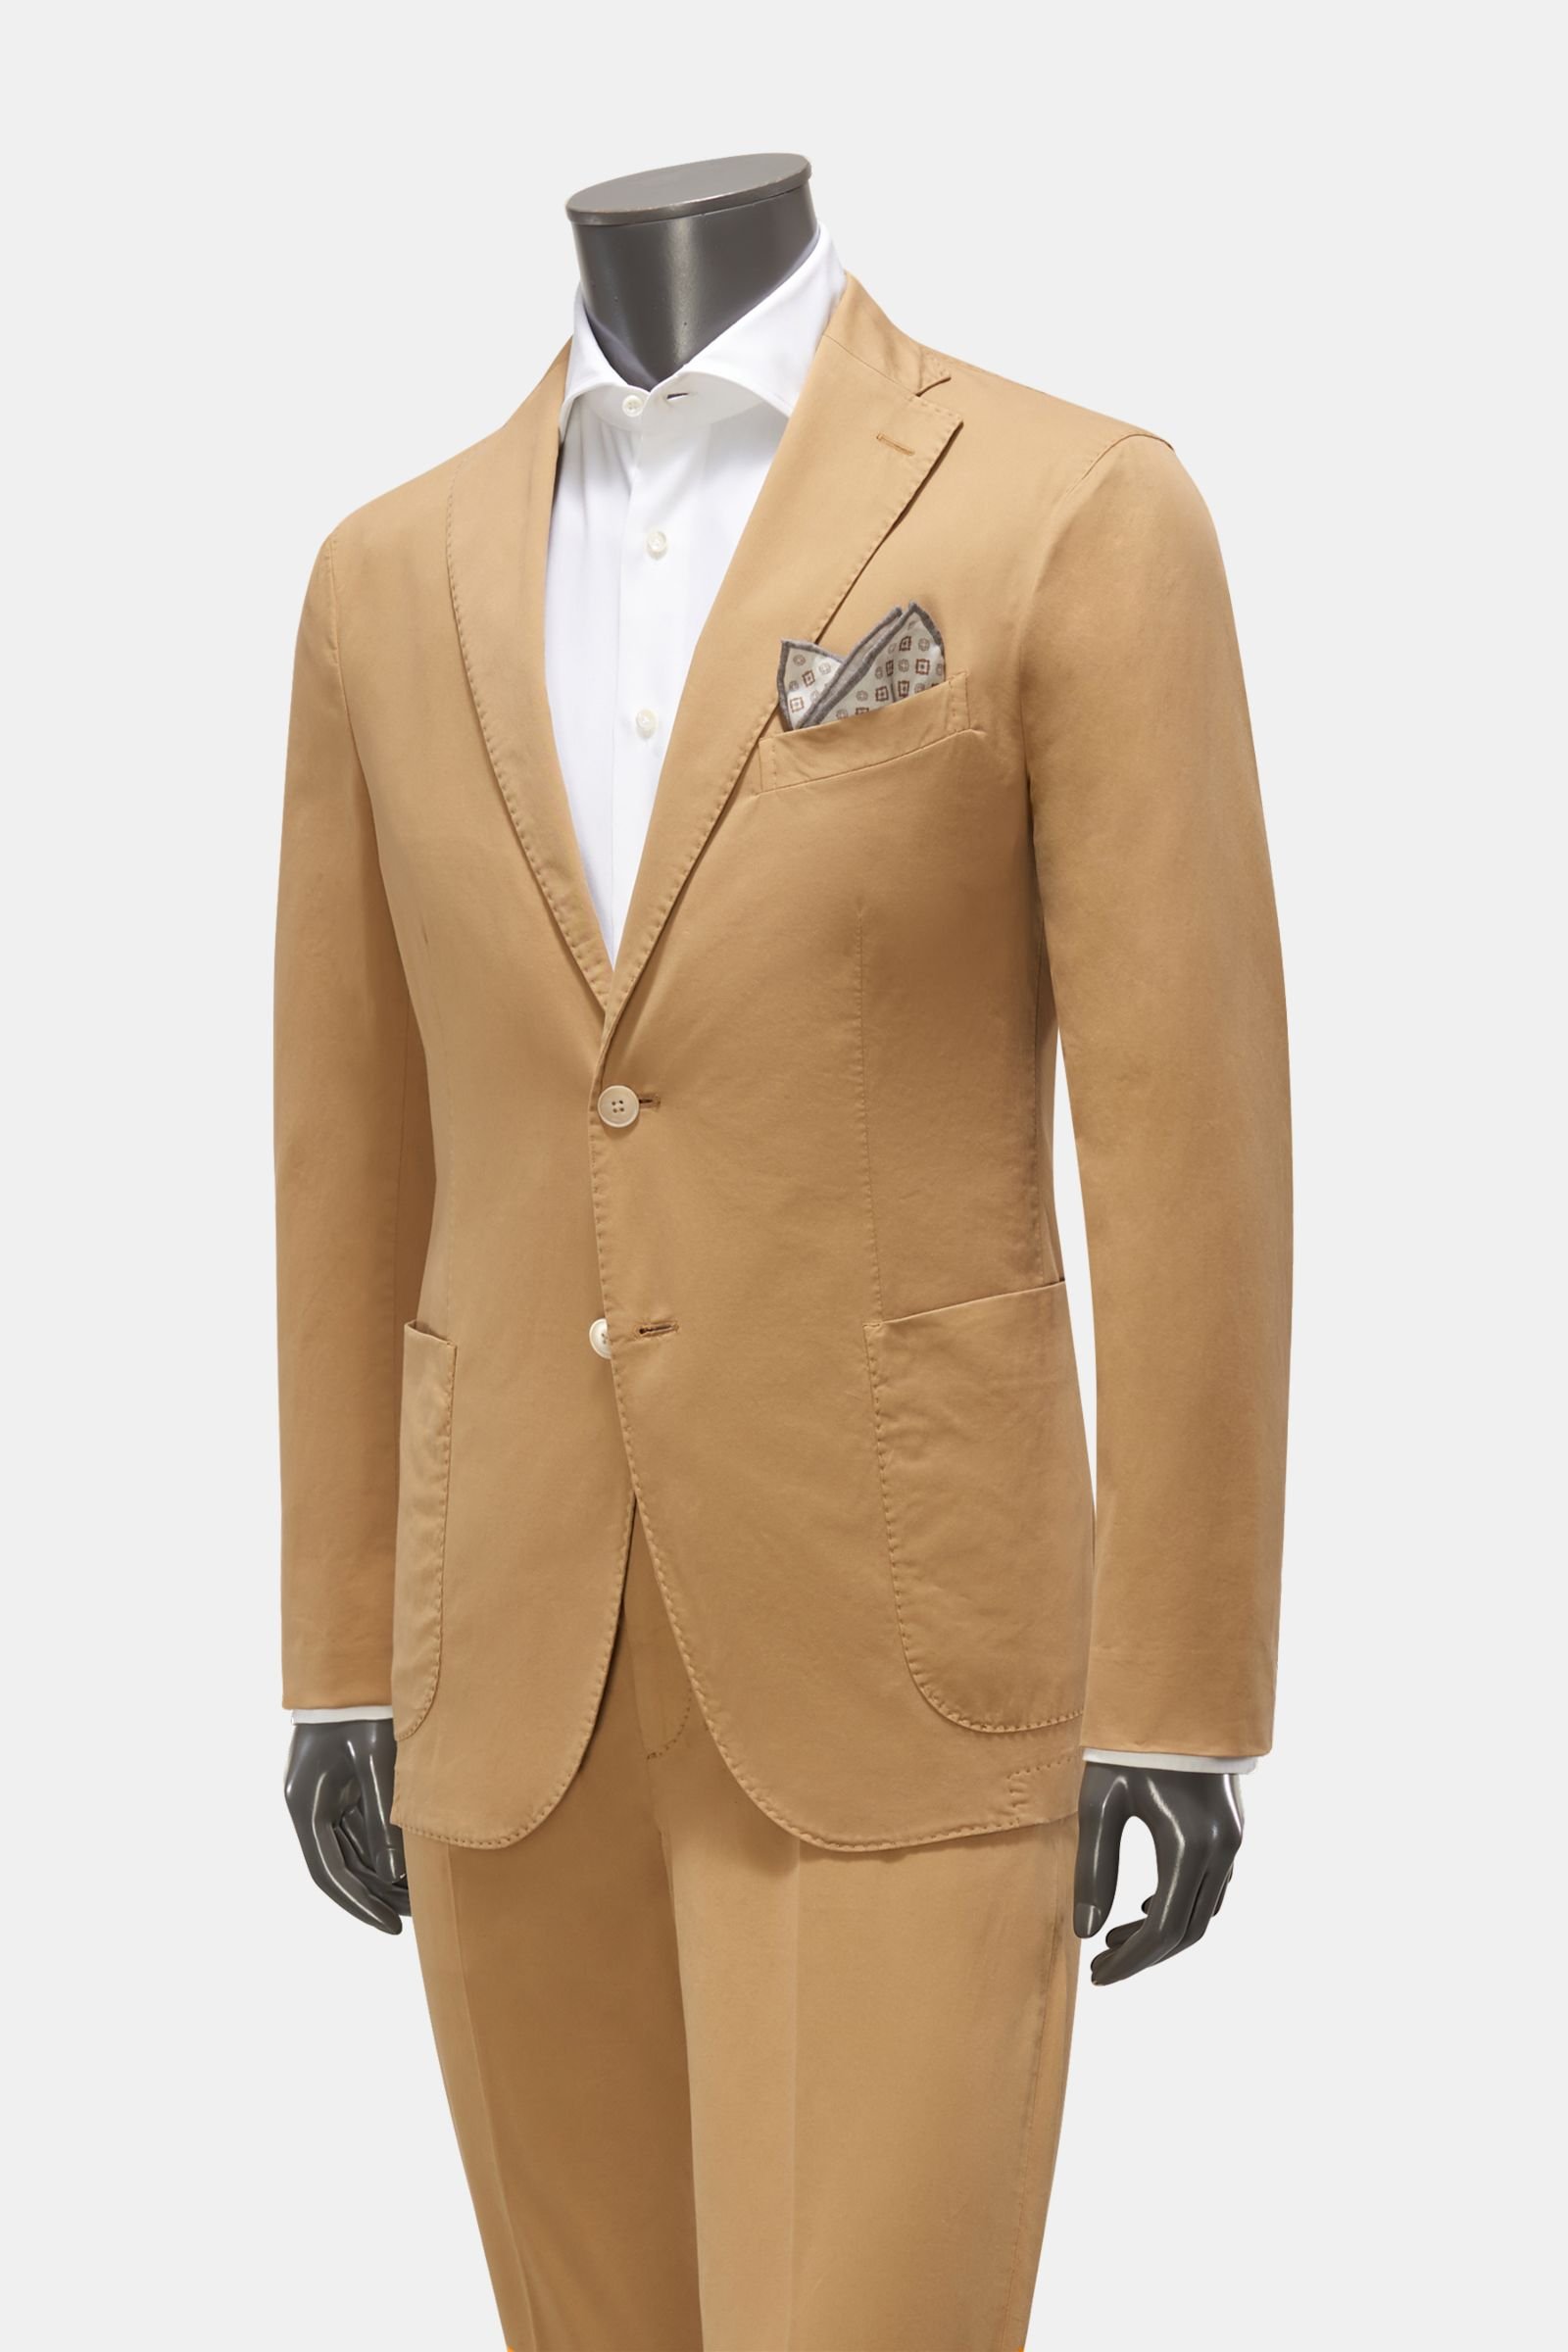 Cotton suit light brown 